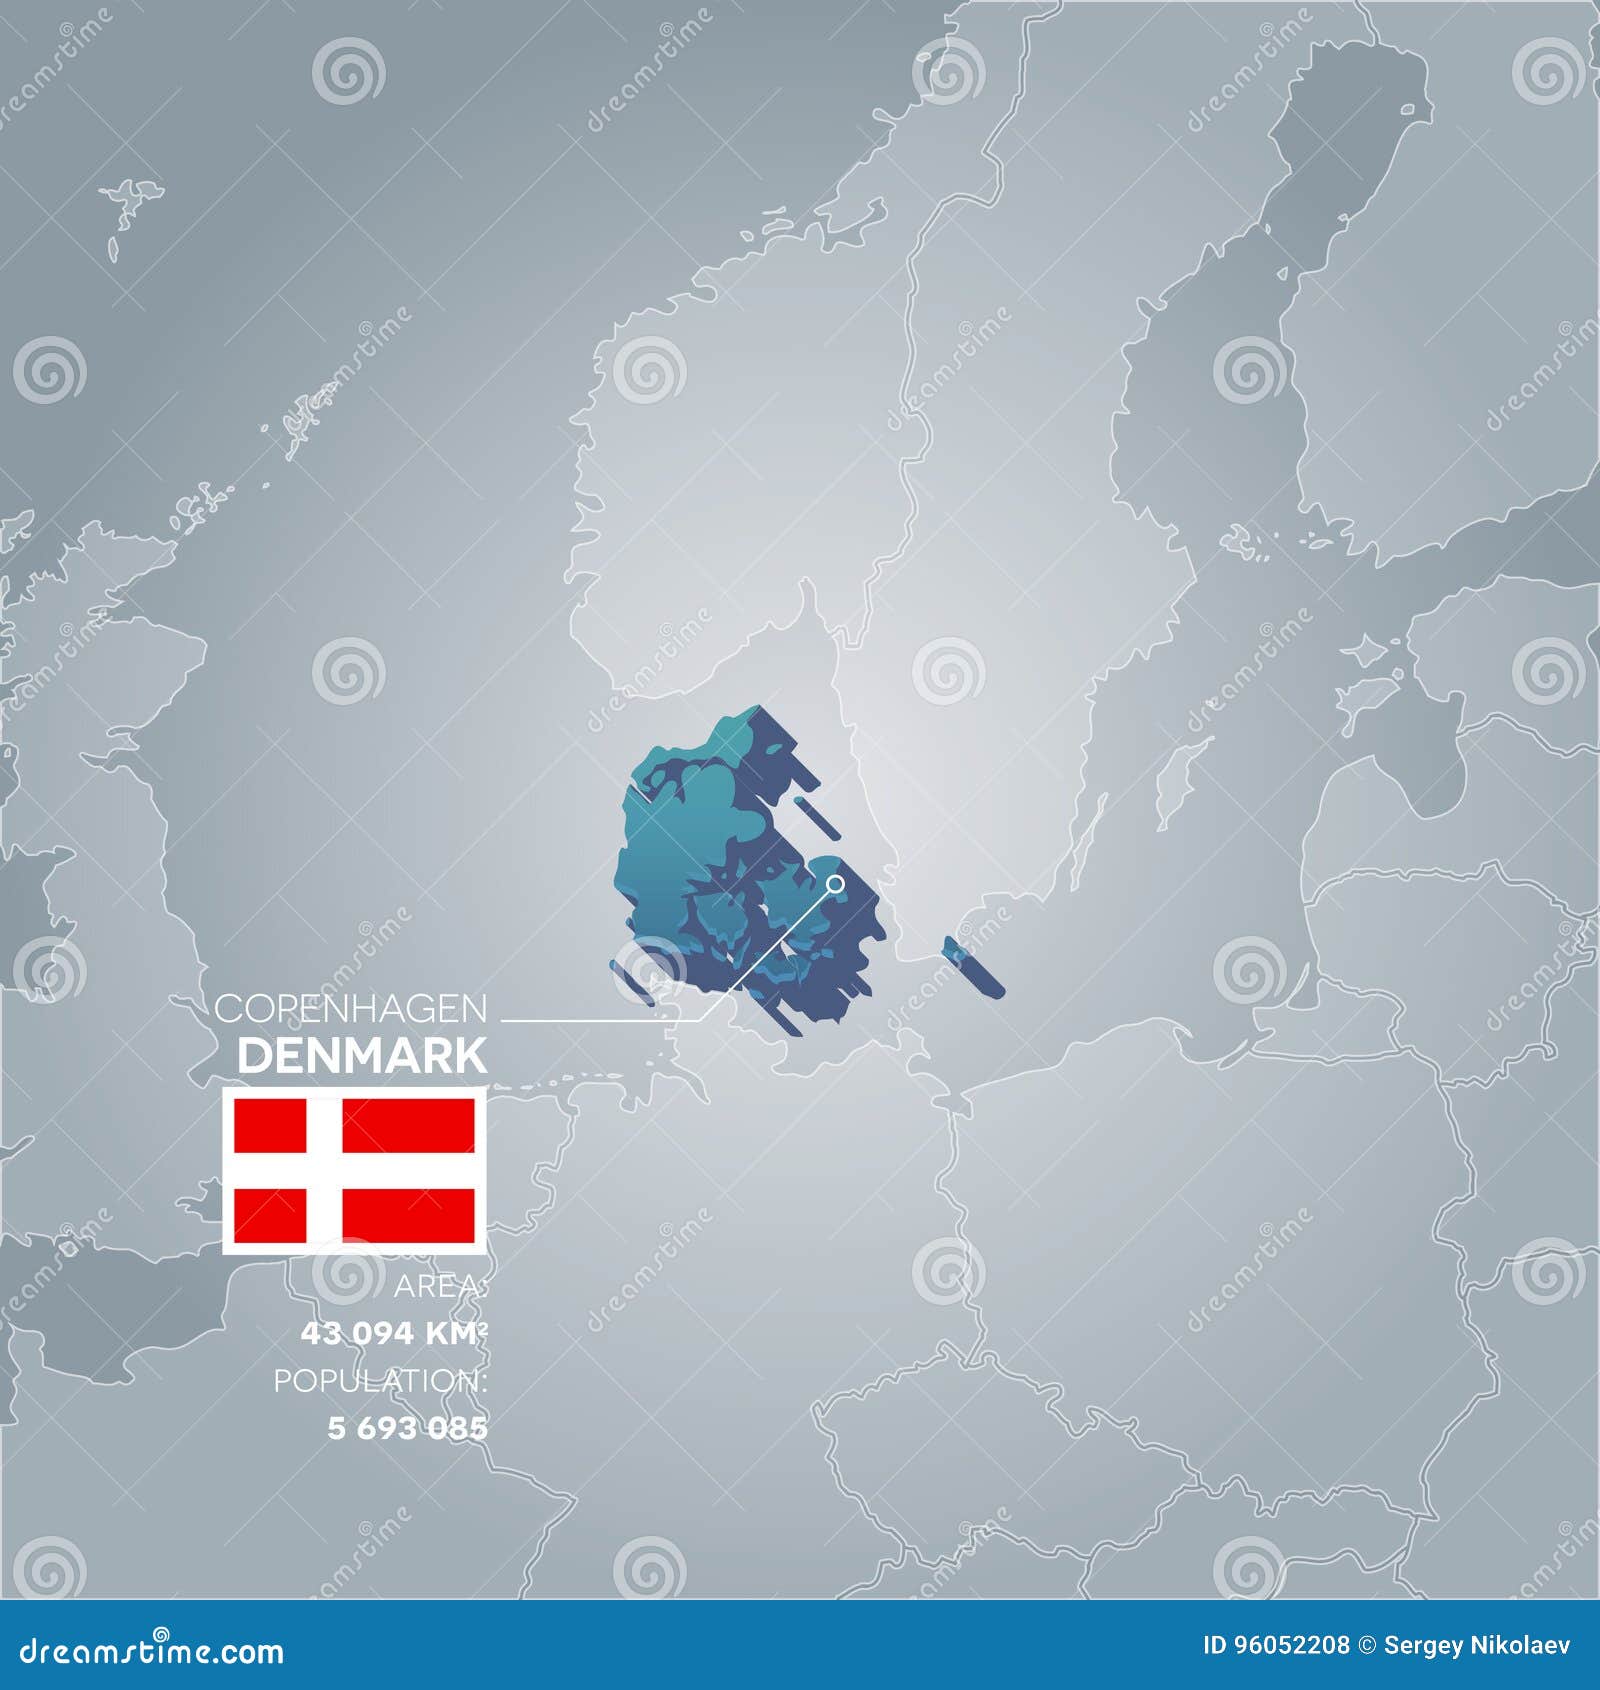 Danmark informationsöversikt. Danmark 3d översikt med information av område och befolkning av landet